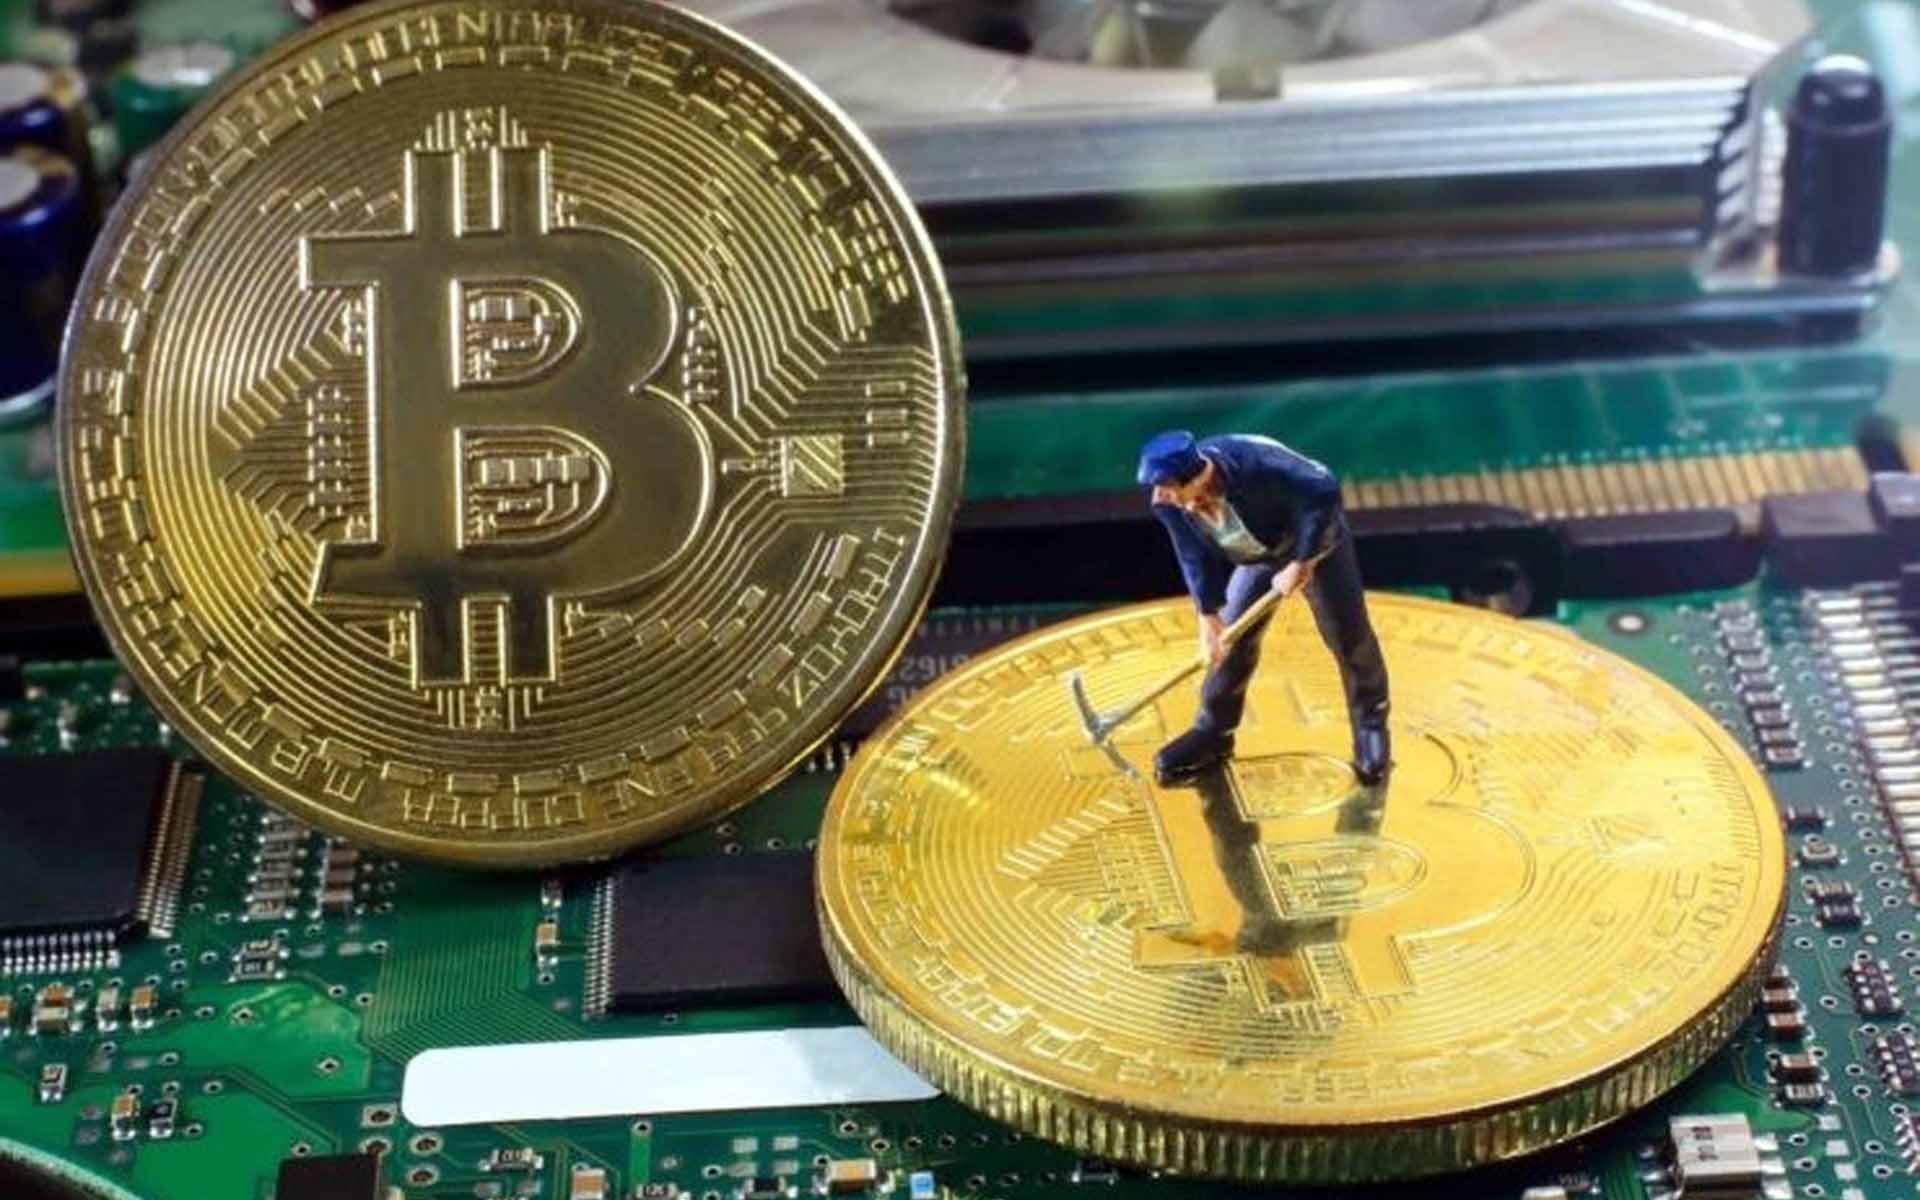 zhongchuan mining bitcoins